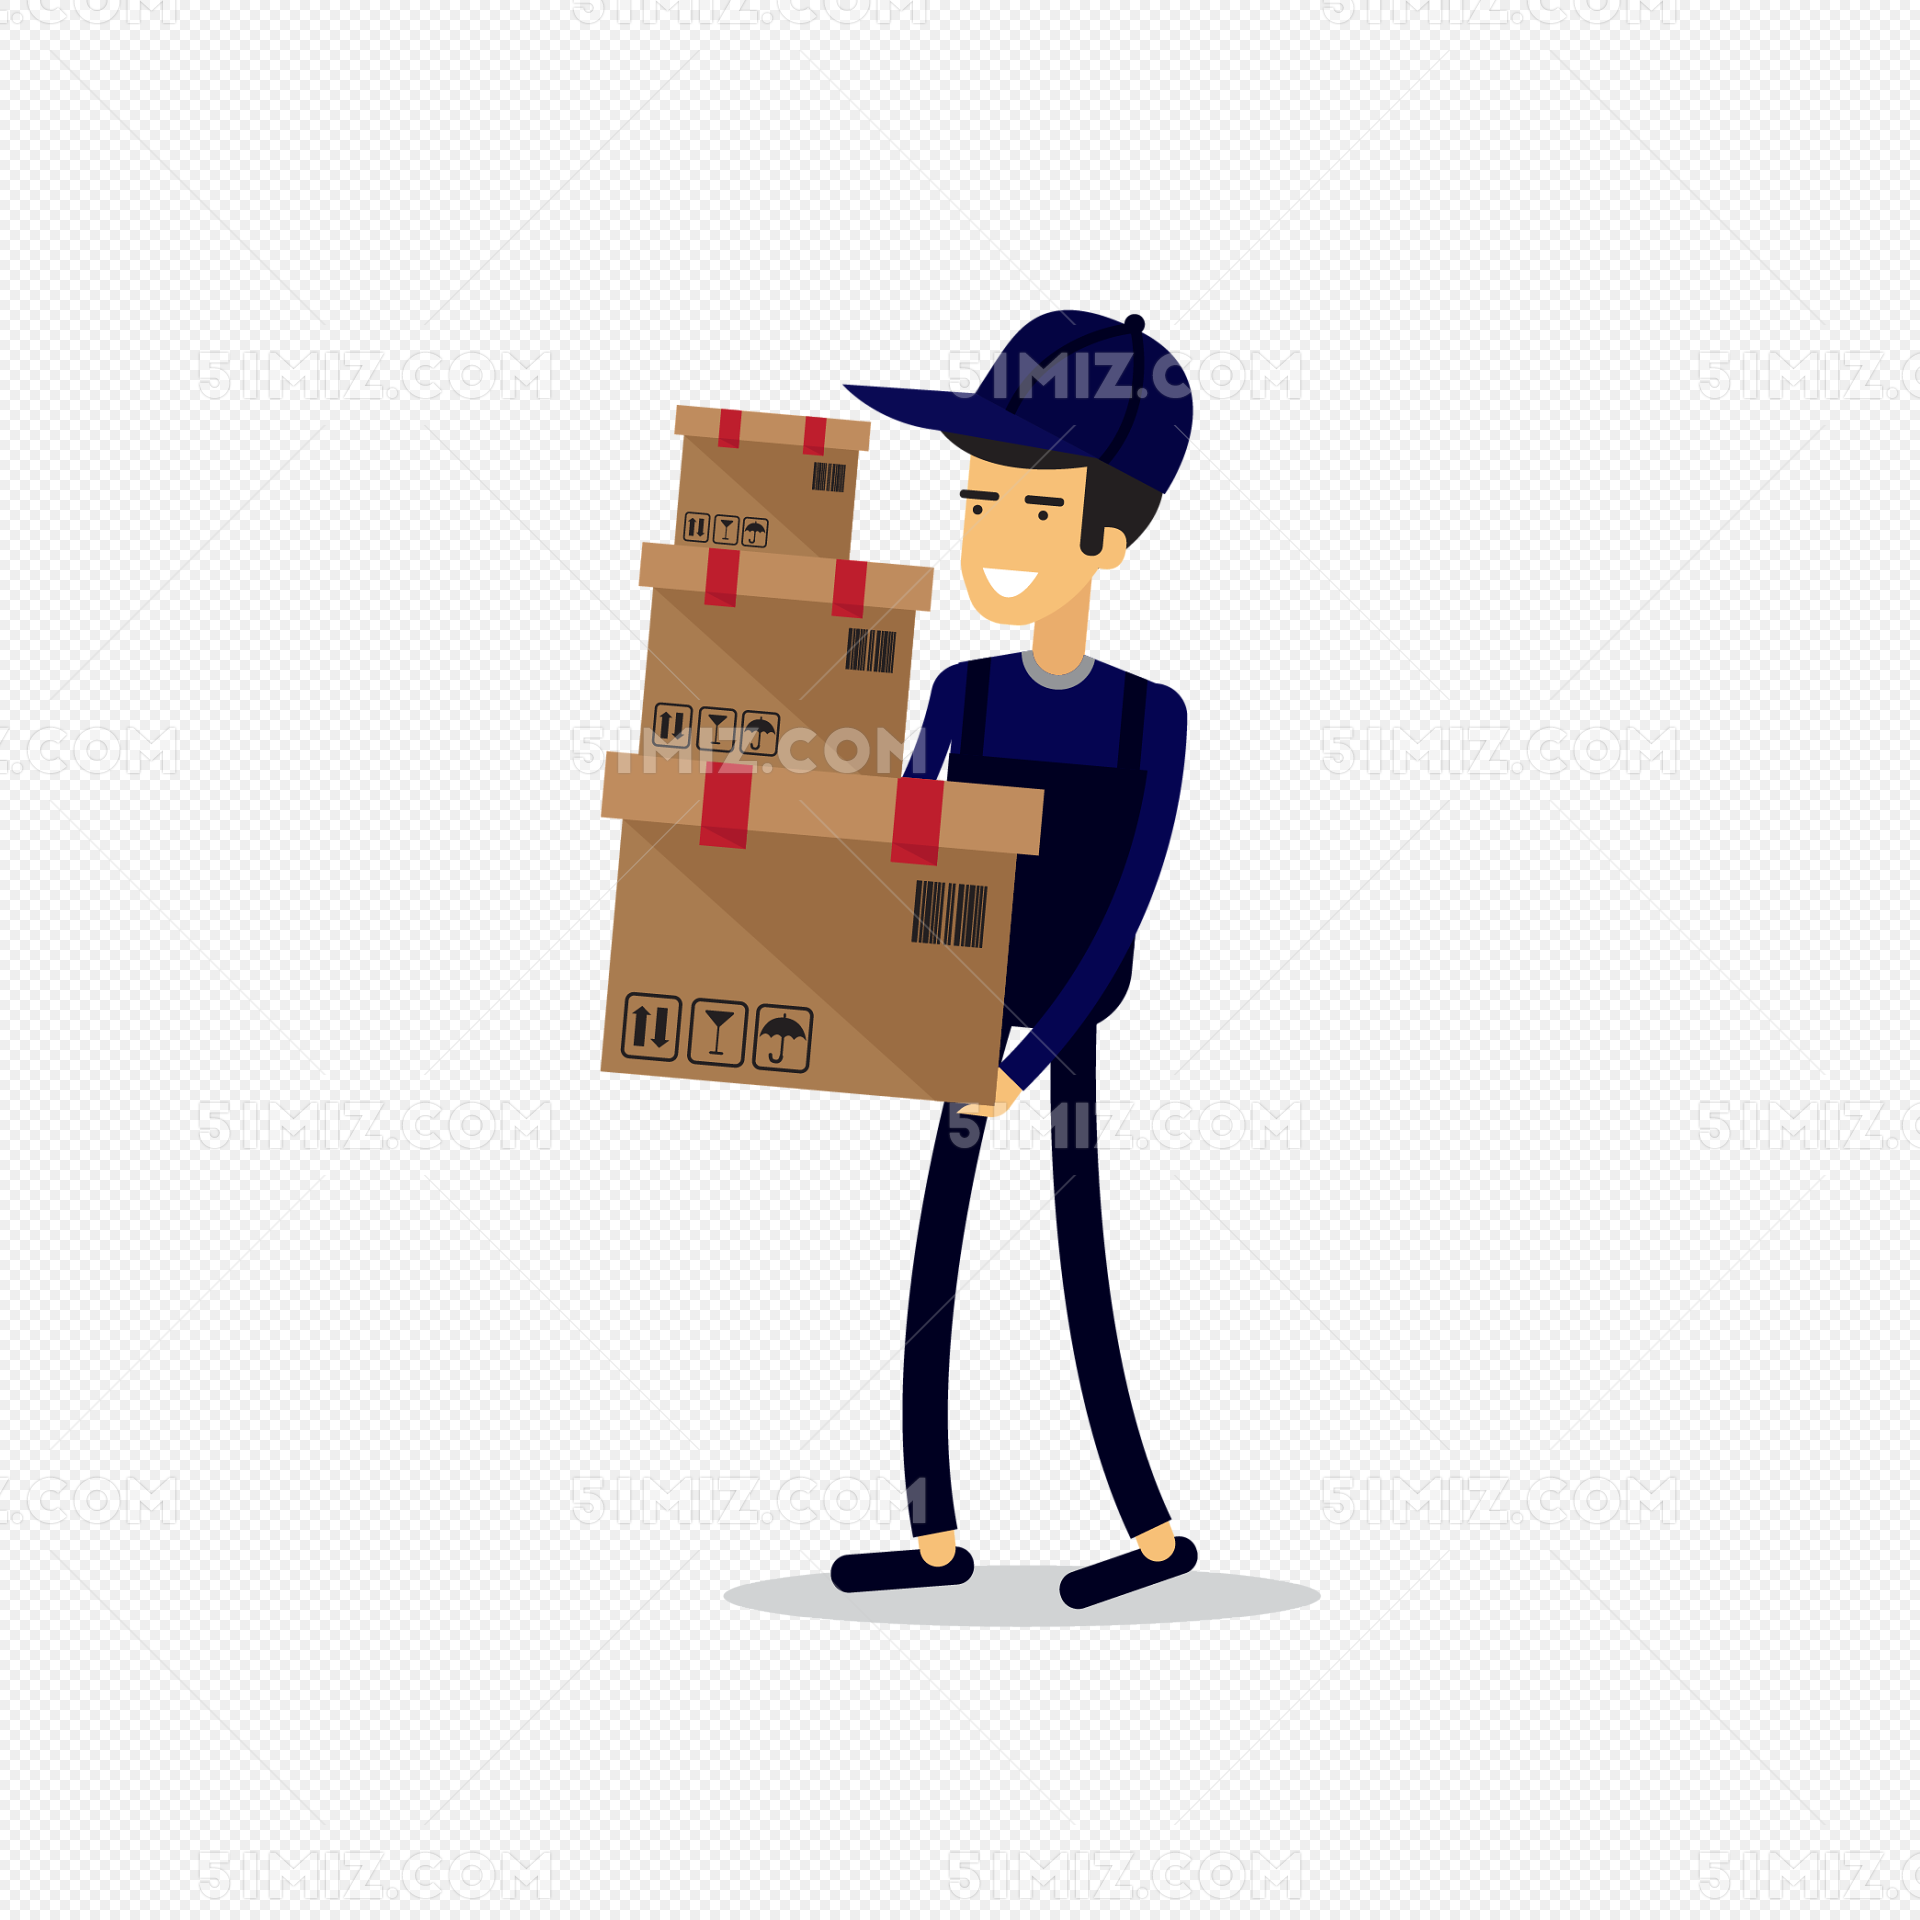 快递员送包裹给客户插画图片素材免费下载 - 觅知网